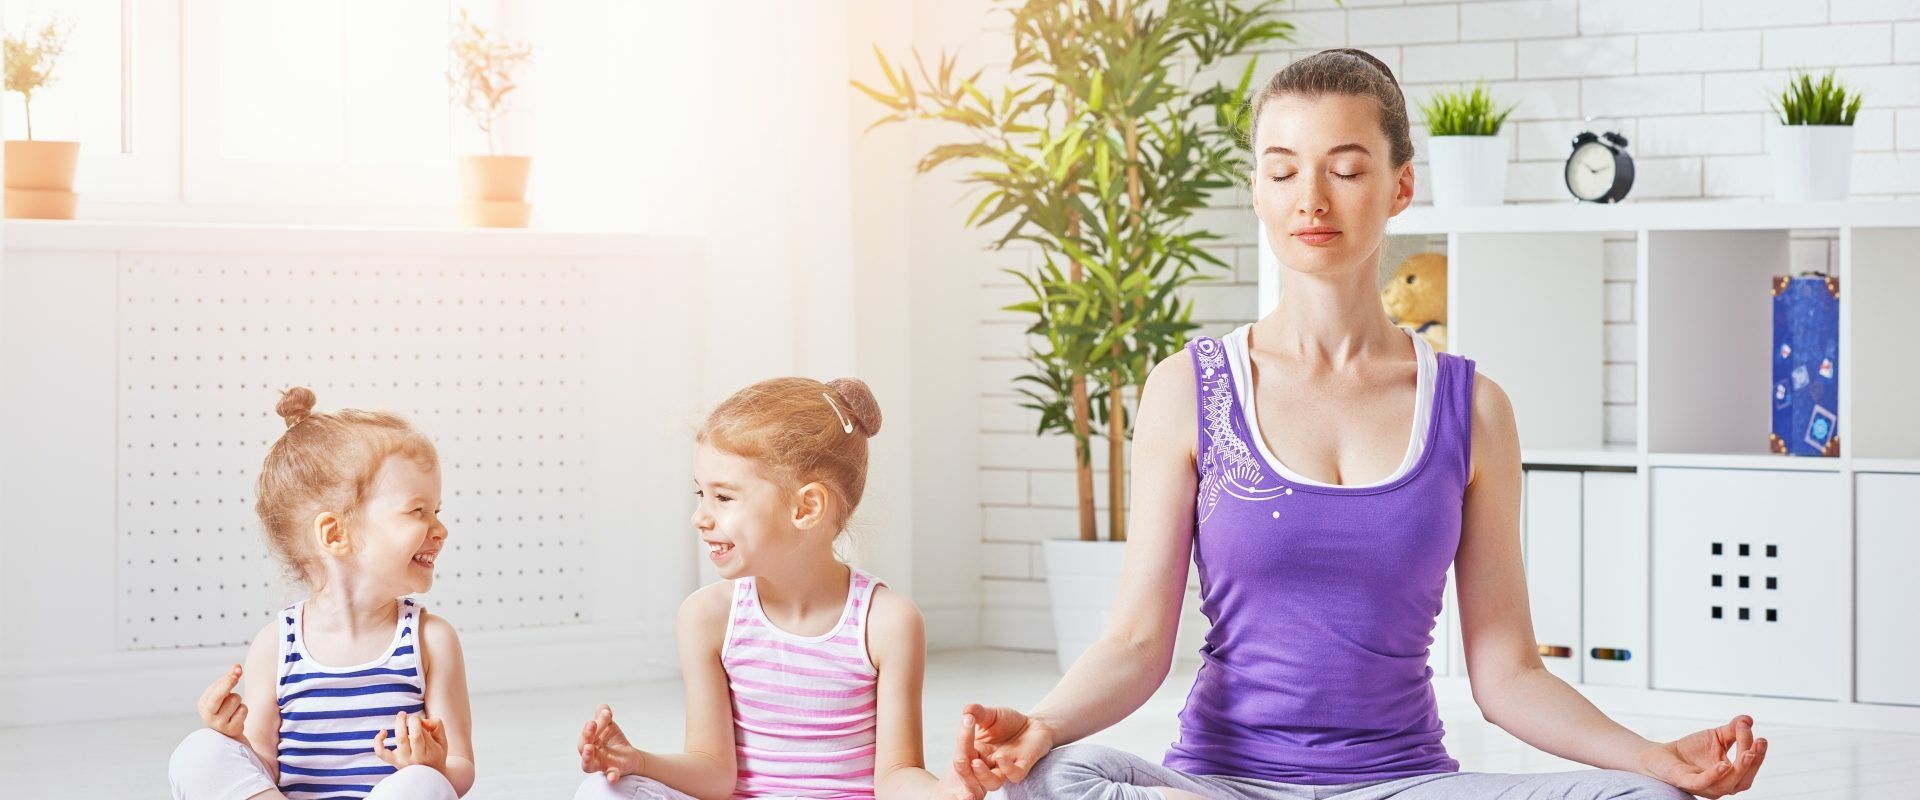 Ćwiczenia relaksacyjne dla dzieci - jak wygląda relaksacja dla dzieci? Mama z dwiema córeczkami medytuje na macie w domu.